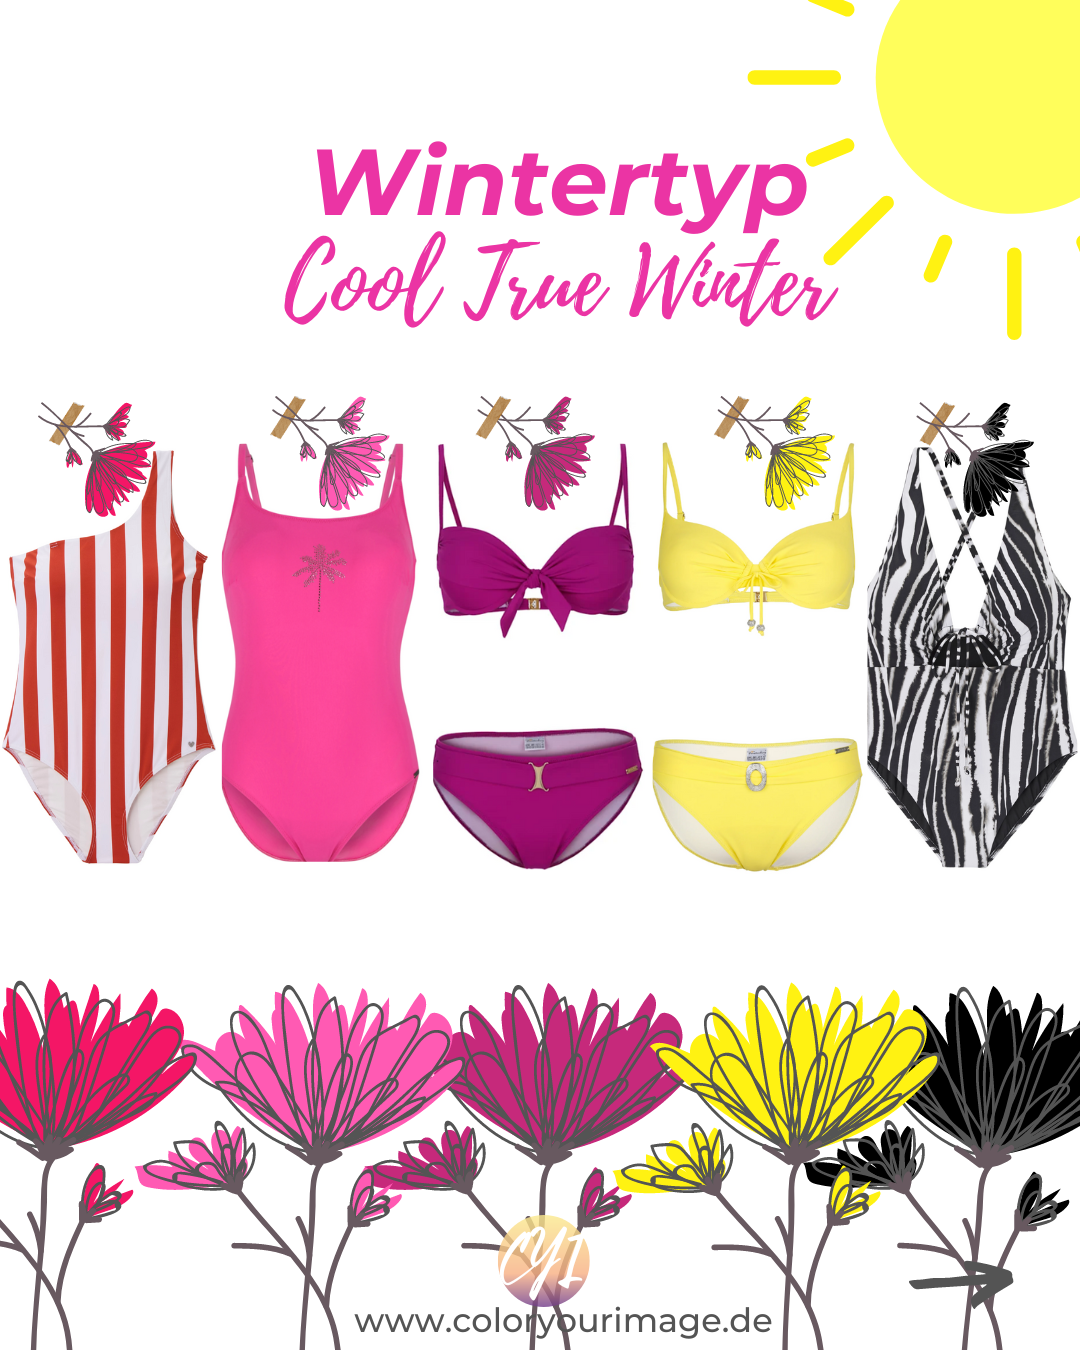 Mode Inspirationen und Outfit Ideen für Wintertypen, Wintertyp, cool, true winter, Bikini, Badeanzug, Impressionen Shop